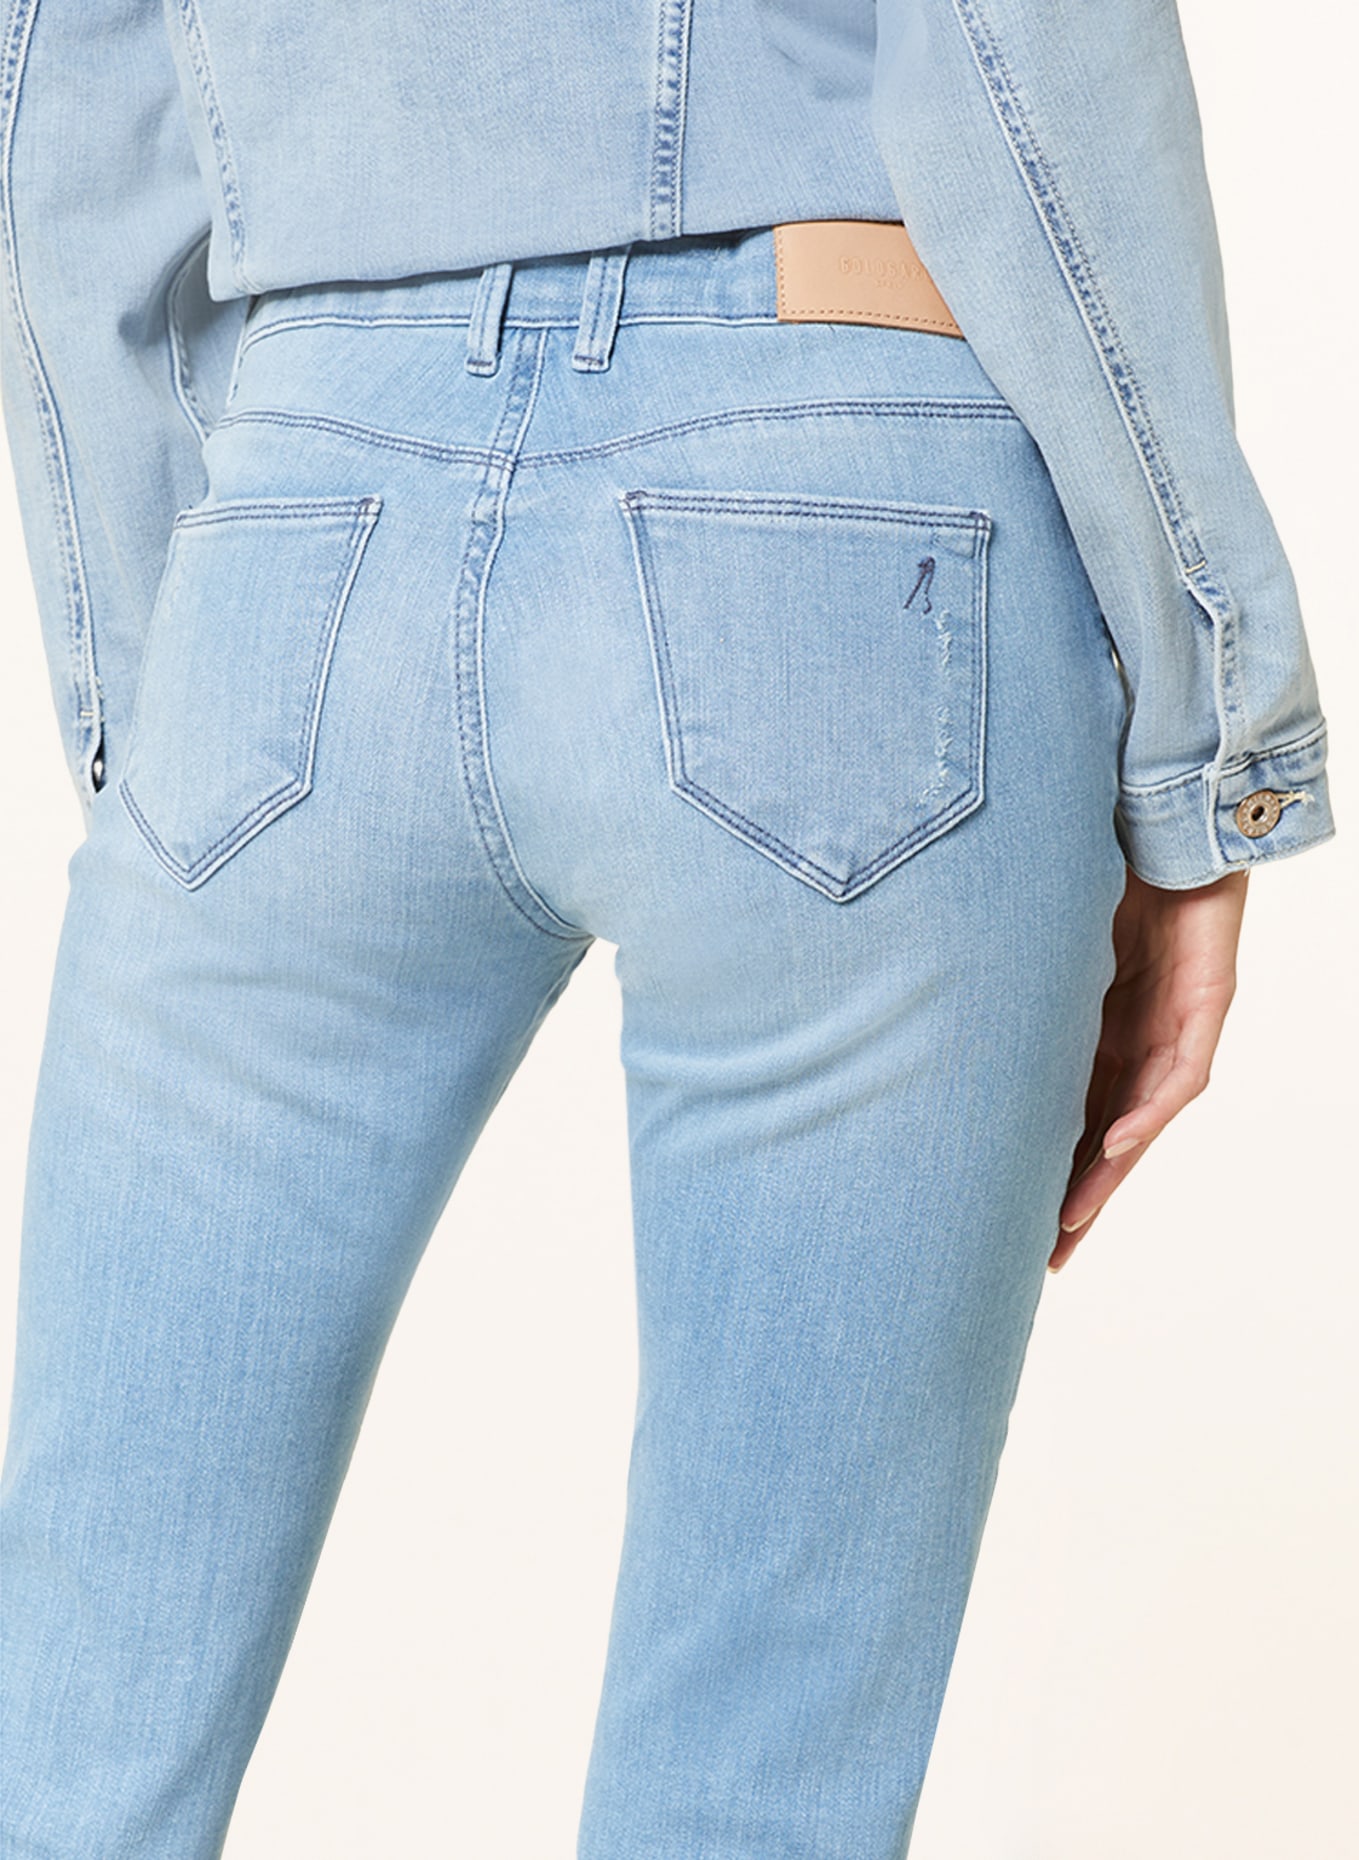 GOLDGARN DENIM Skinny jeans JUNGBUSCH, Color: 1070 light blue (Image 5)